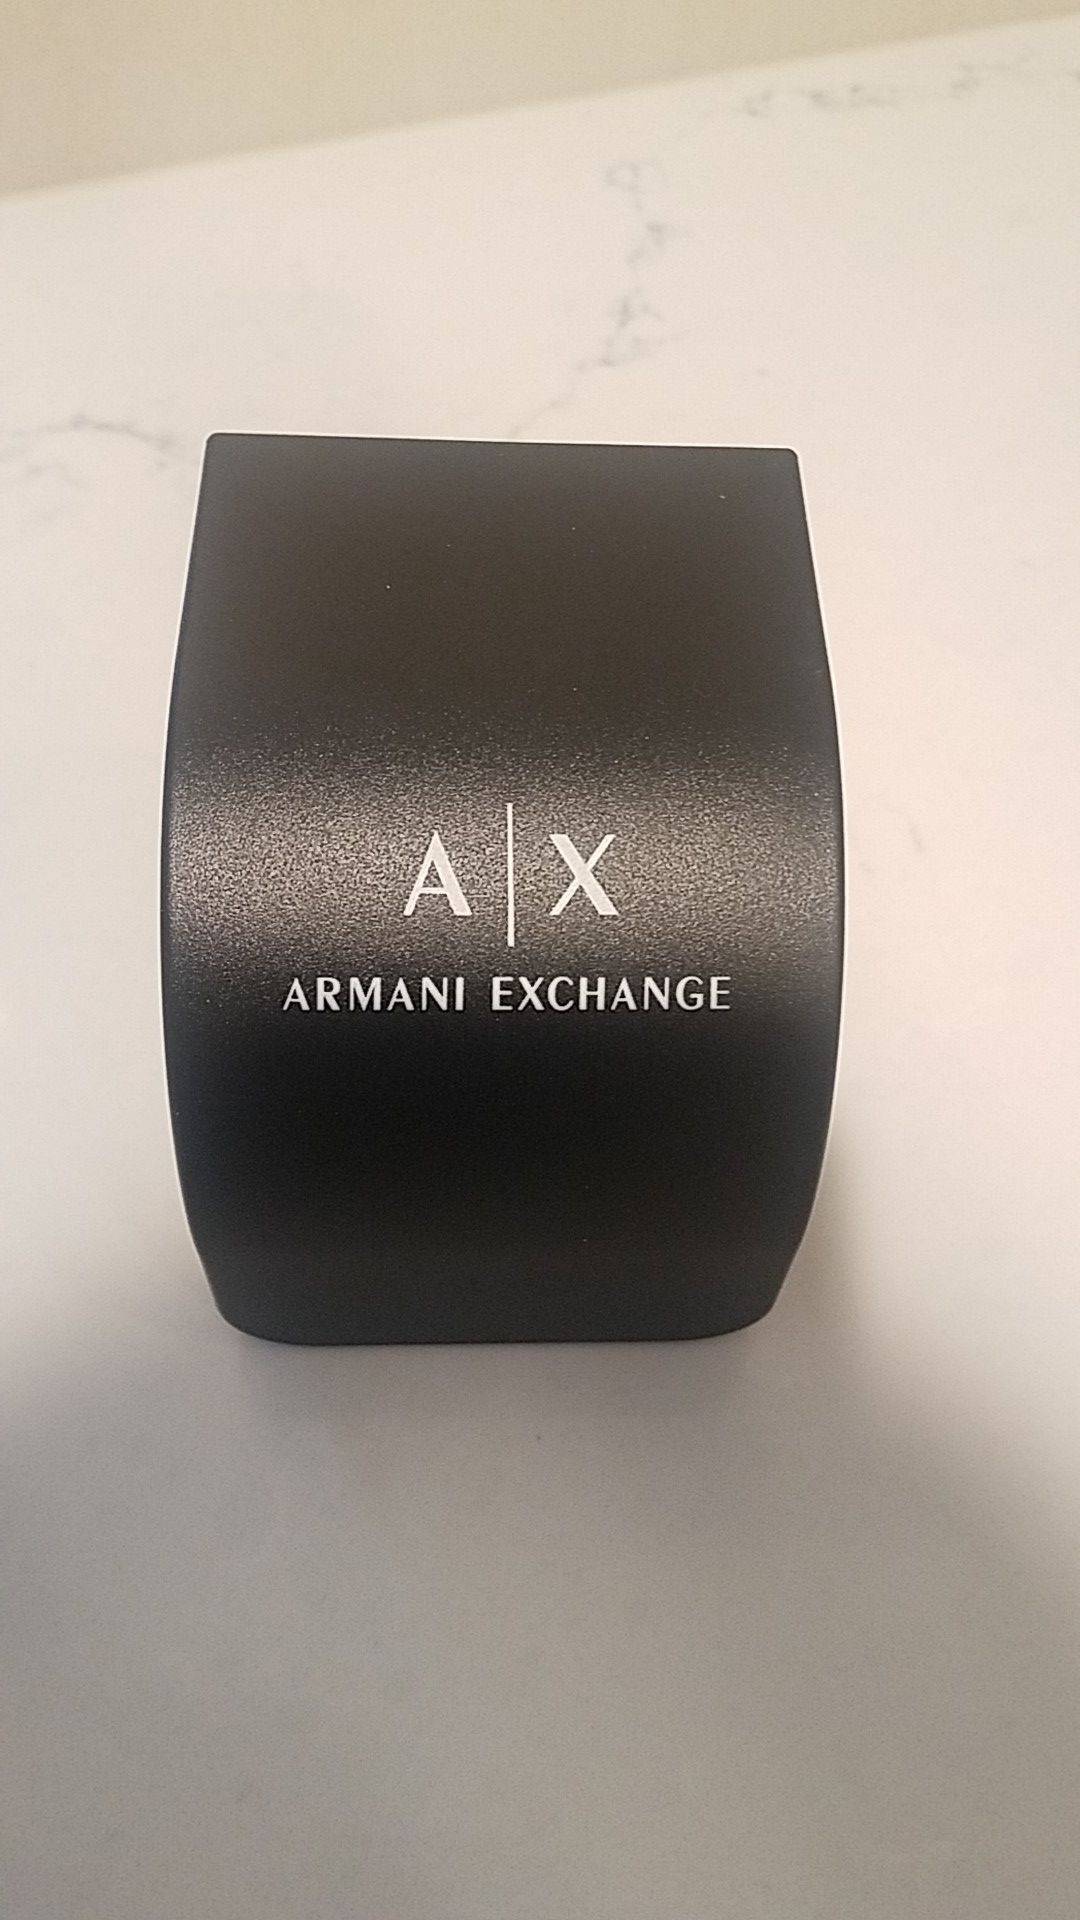 Brand new Armani exchange